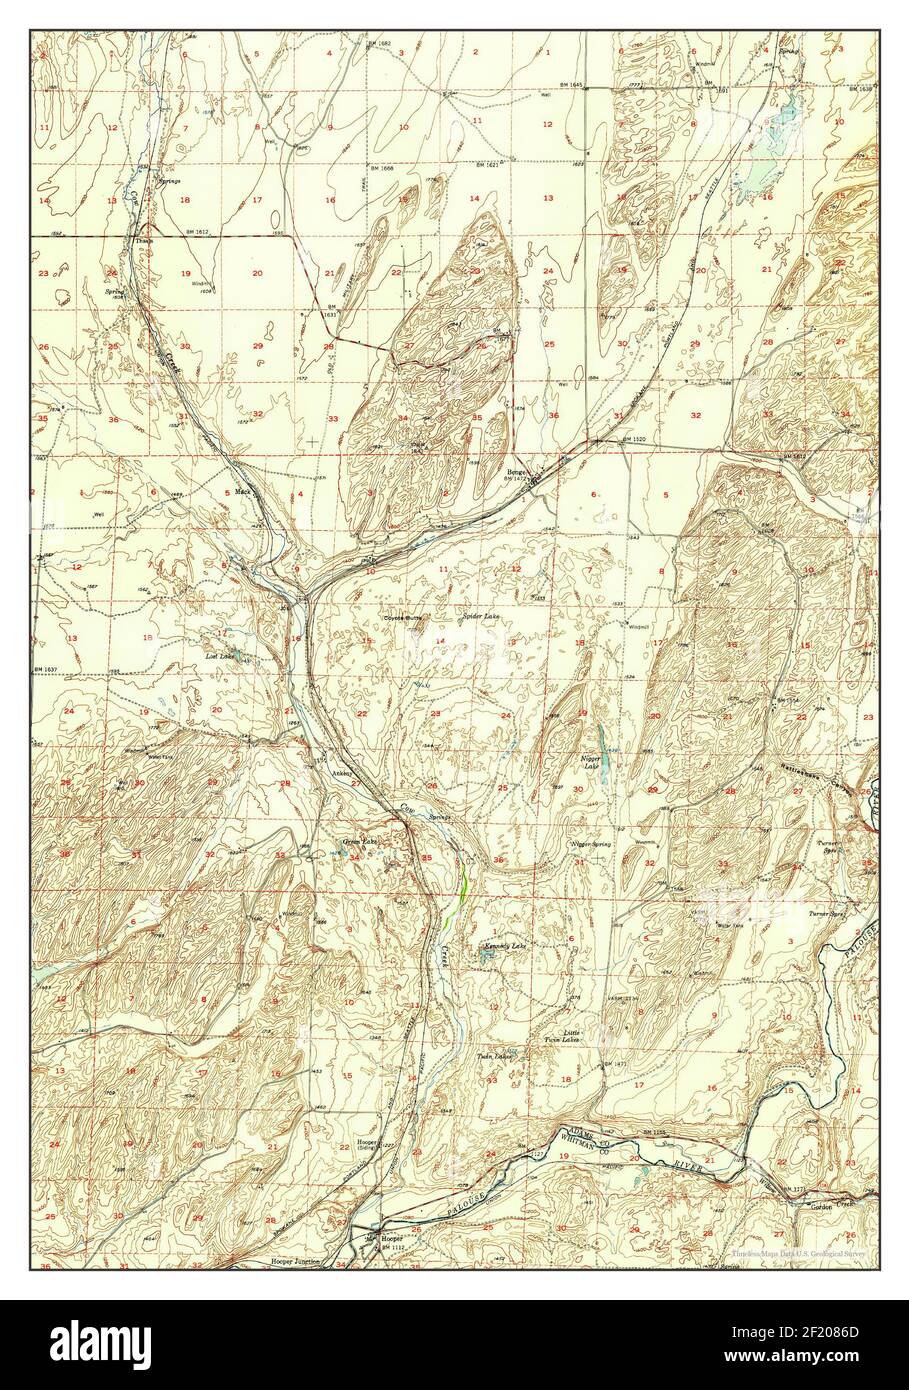 Benge, Washington, map 1952, 1:62500, United States of America by Timeless Maps, data U.S. Geological Survey Stock Photo